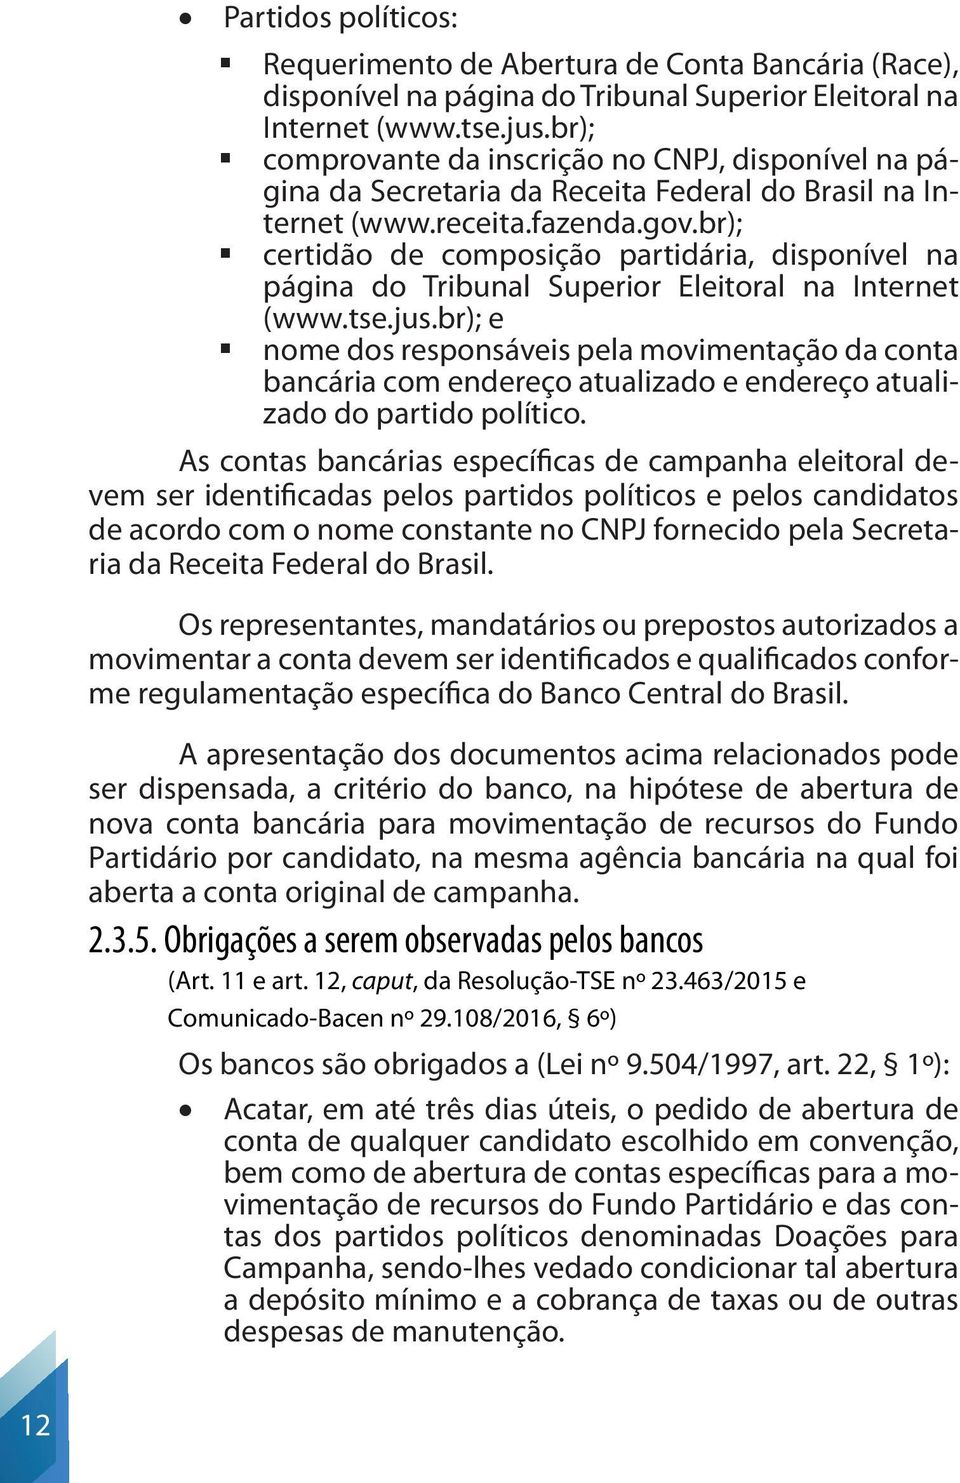 br); certidão de composição partidária, disponível na página do Tribunal Superior Eleitoral na Internet (www.tse.jus.